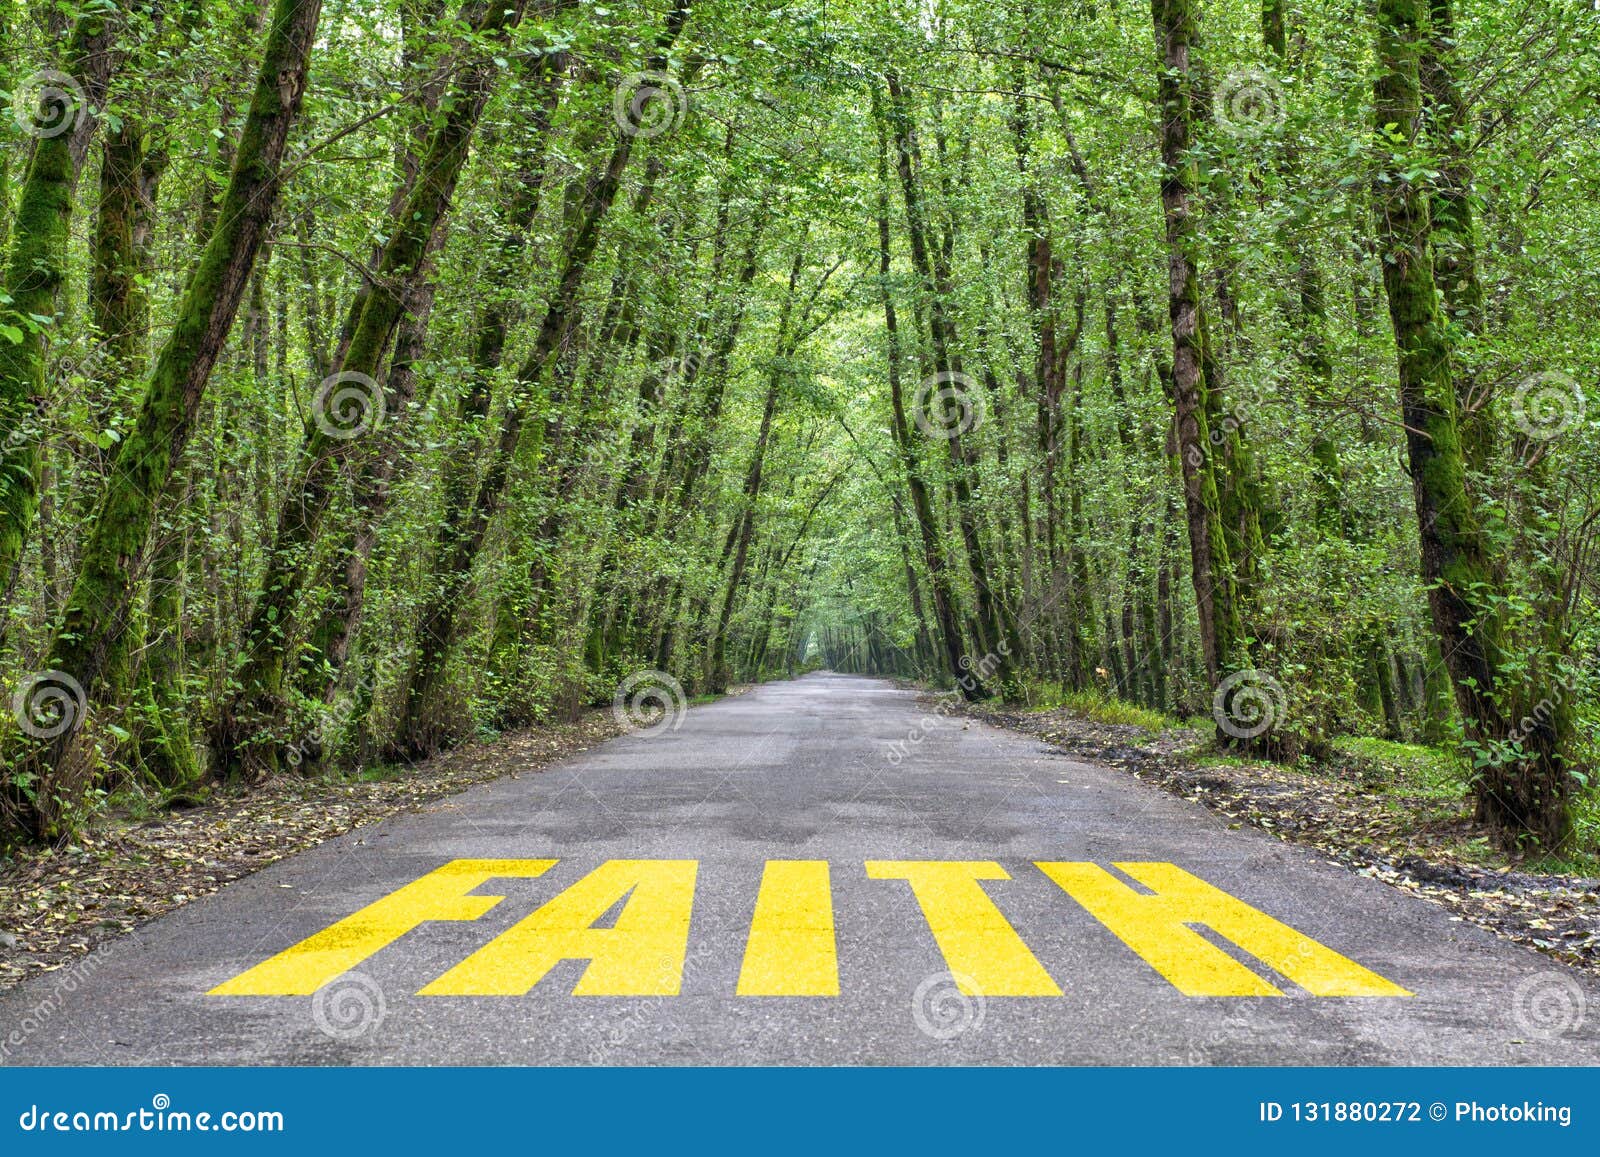 jungle road to faith